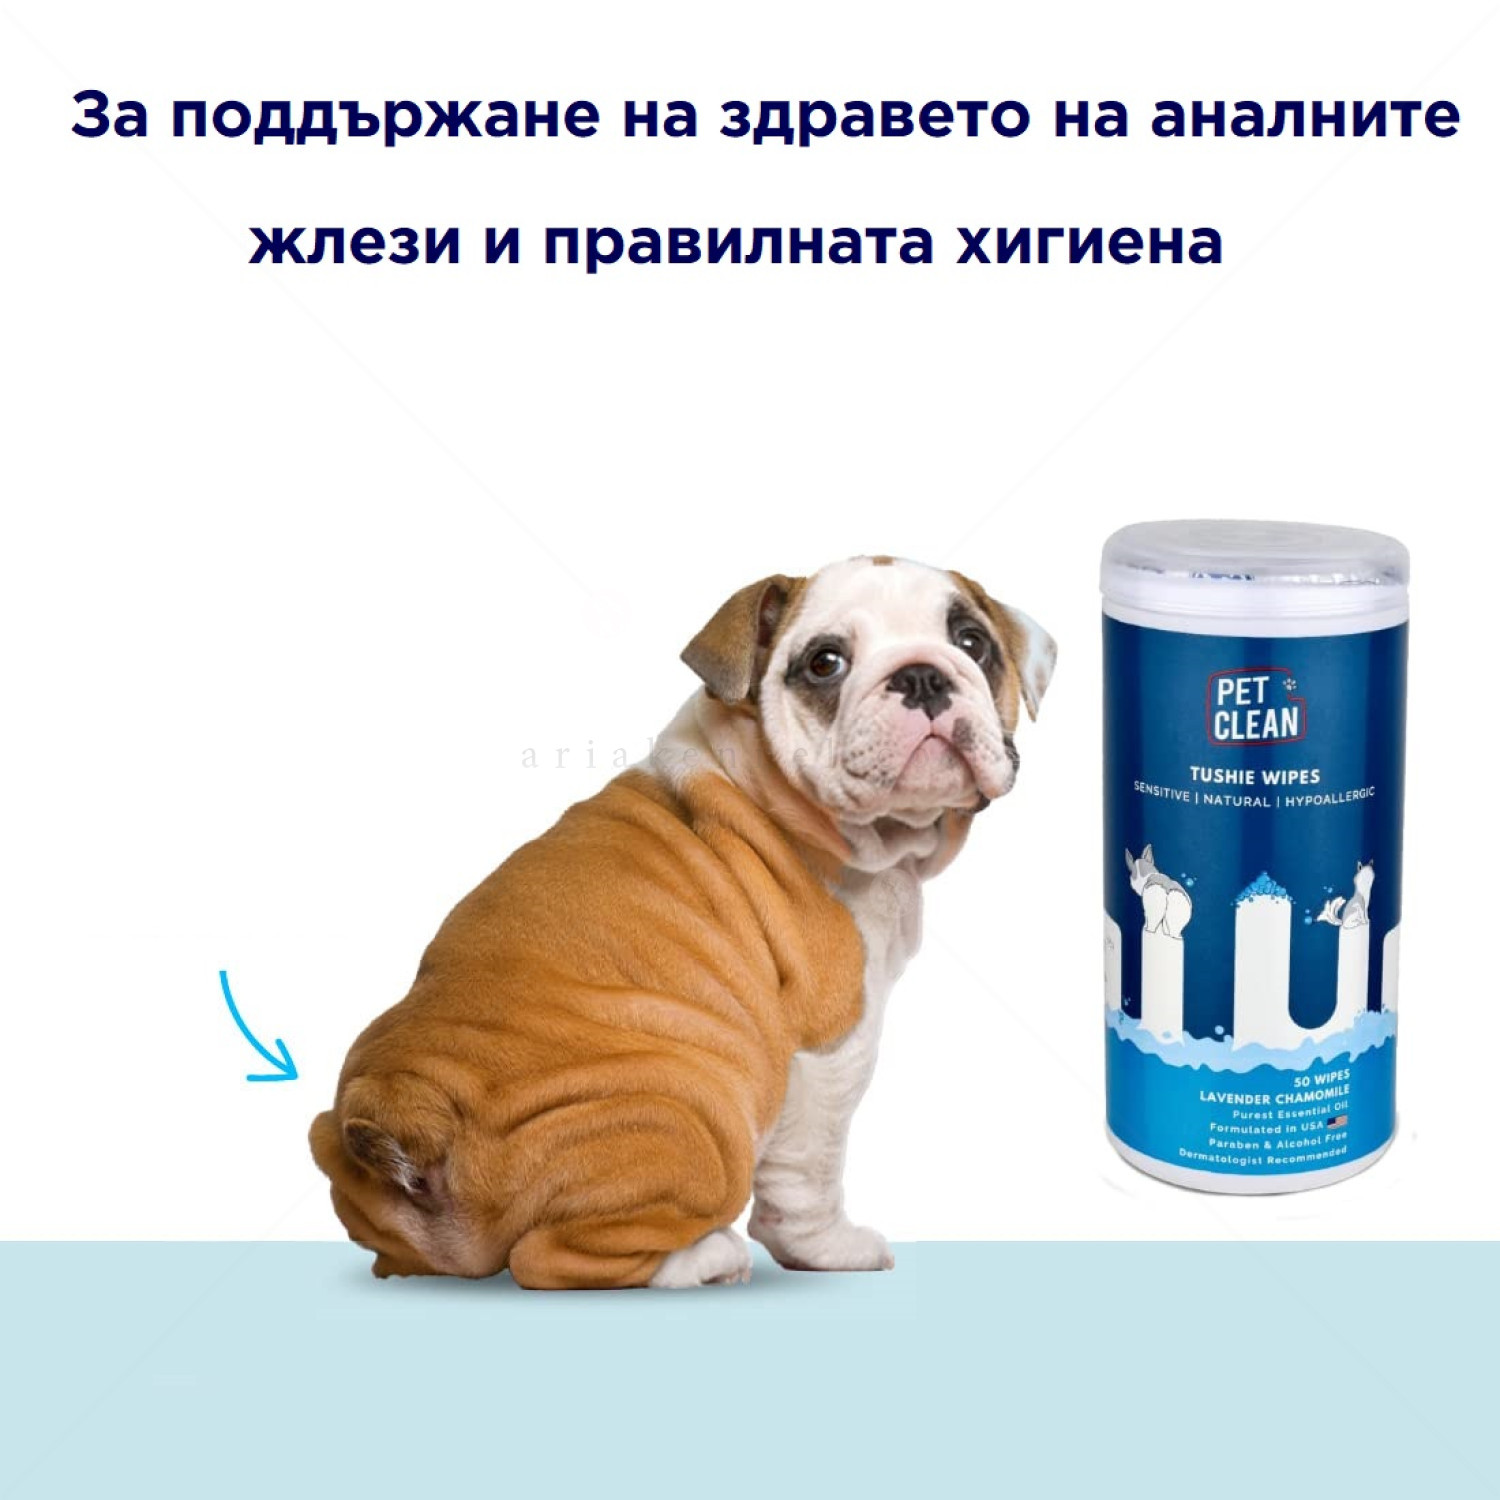 Мокри кърпи за почистване на аналната област на кучета и котки с лавандула и лайка, PET CLEAN, в кутия